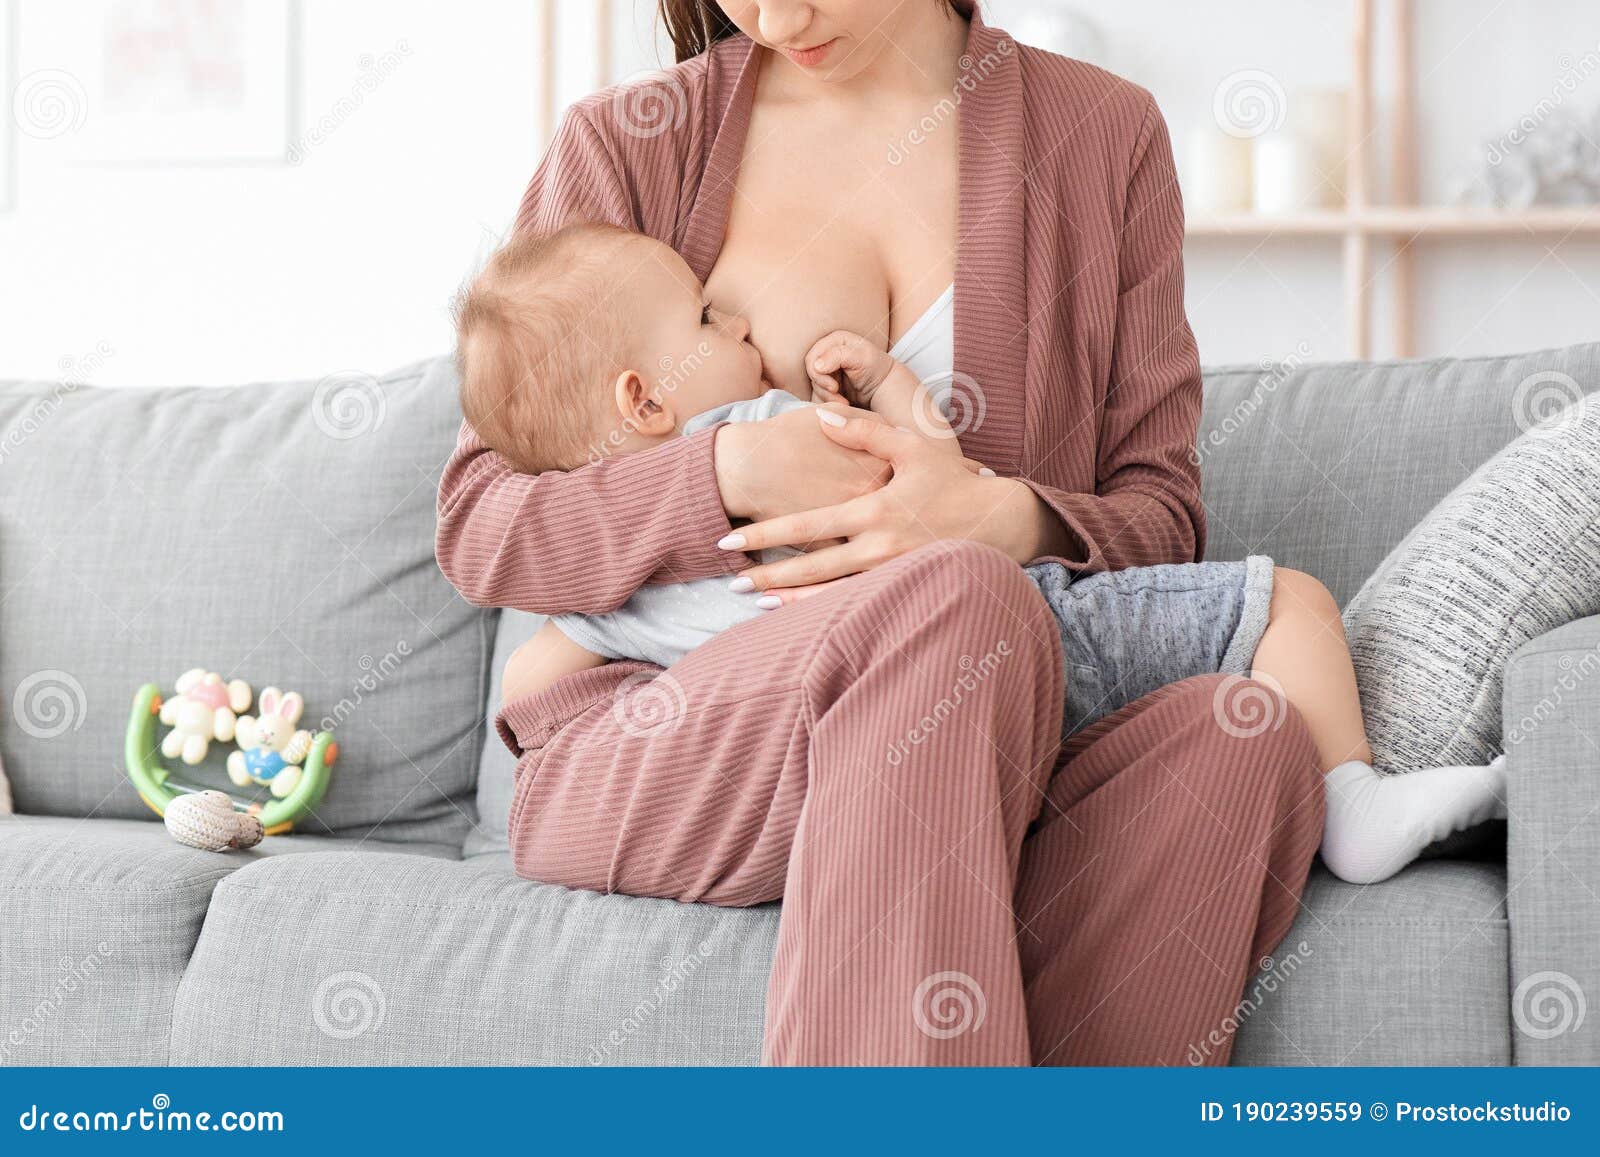 кормит ребенка грудью порно фото 5